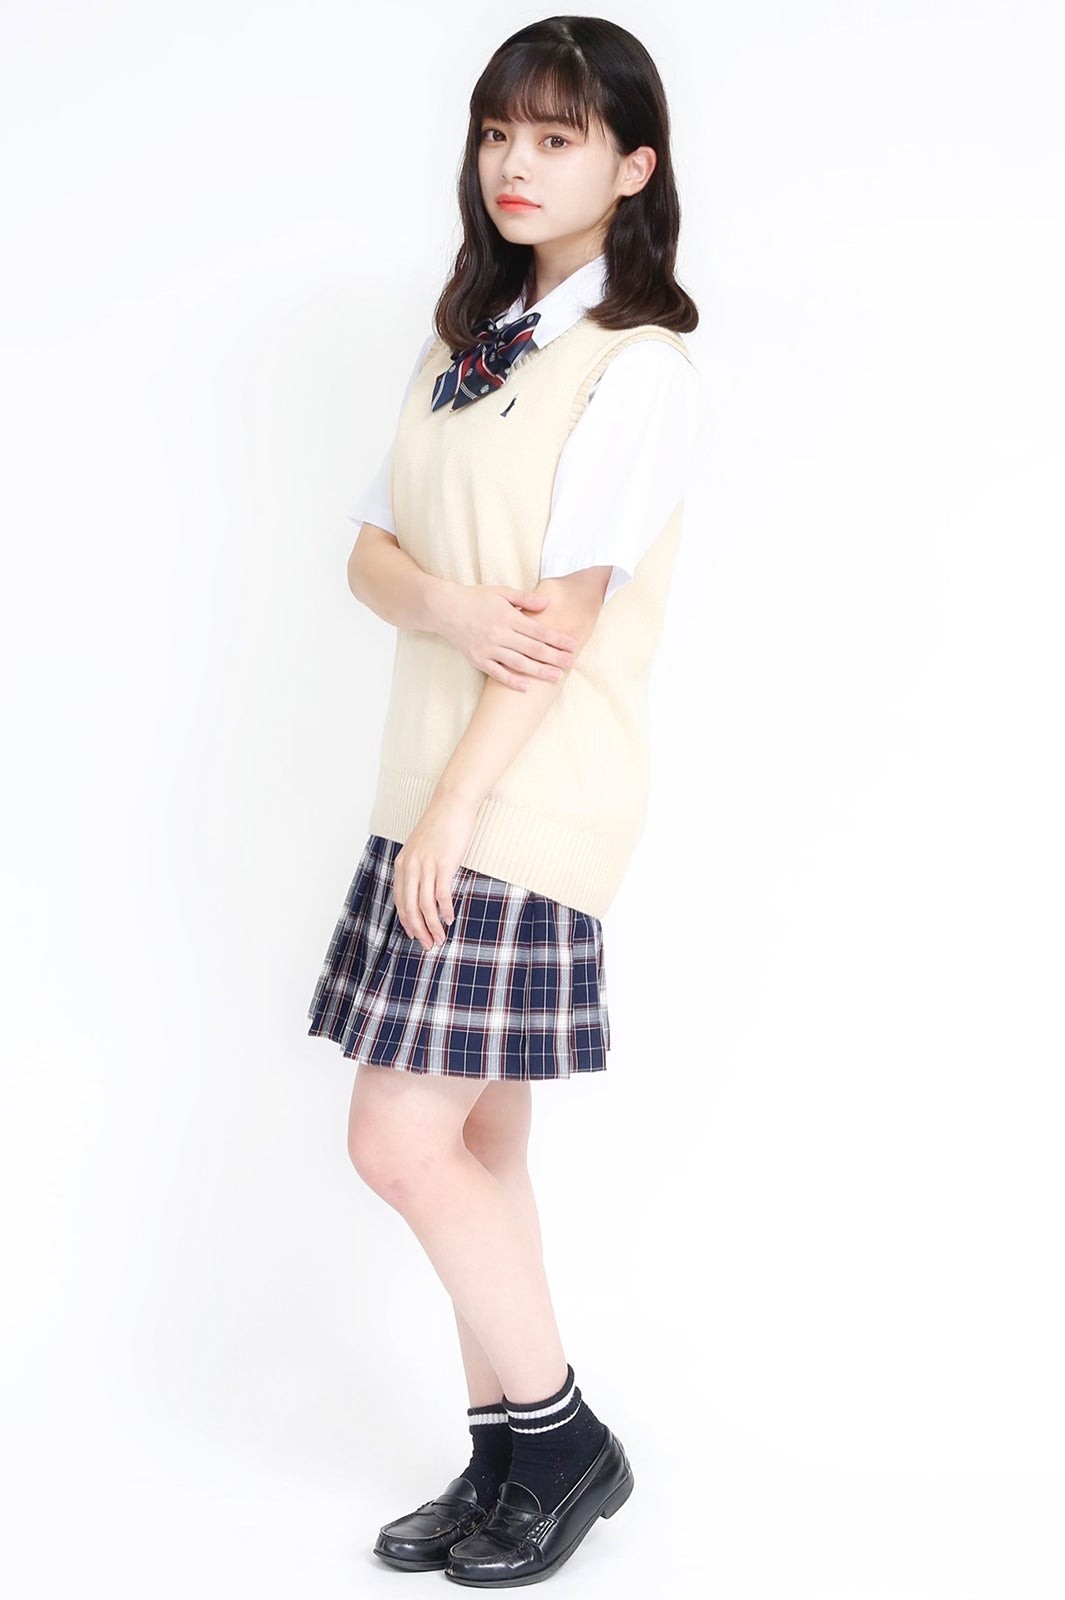 [Image] 10 cute Japanese high school girls are here wwwwwwwww